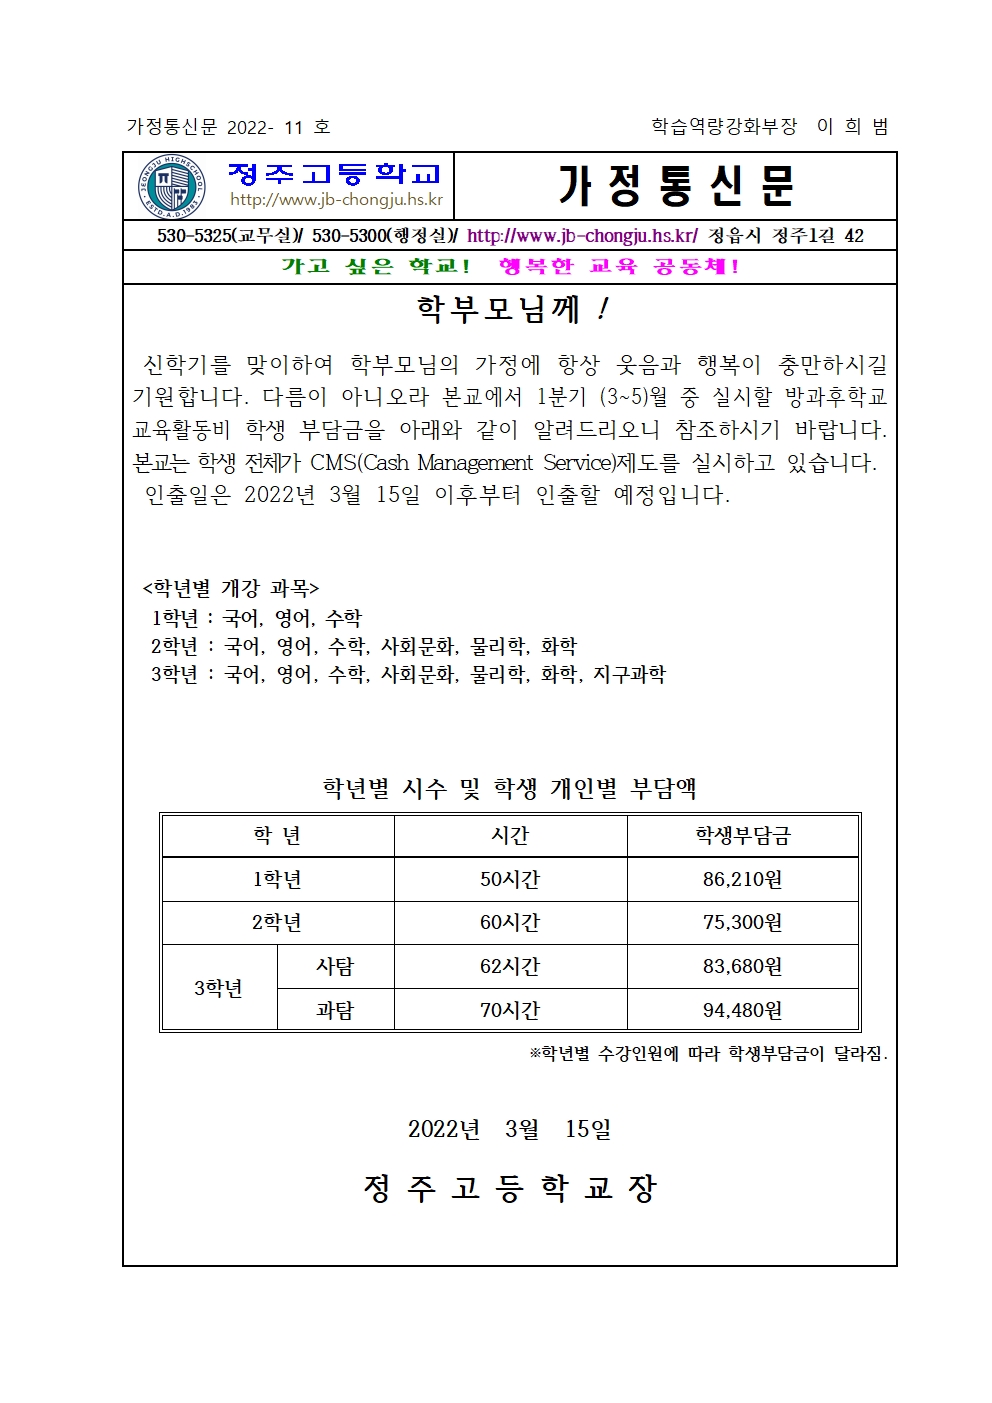 2022학년도 1기(3월~5월) 방과후학교 개인부담금 가정통신문001